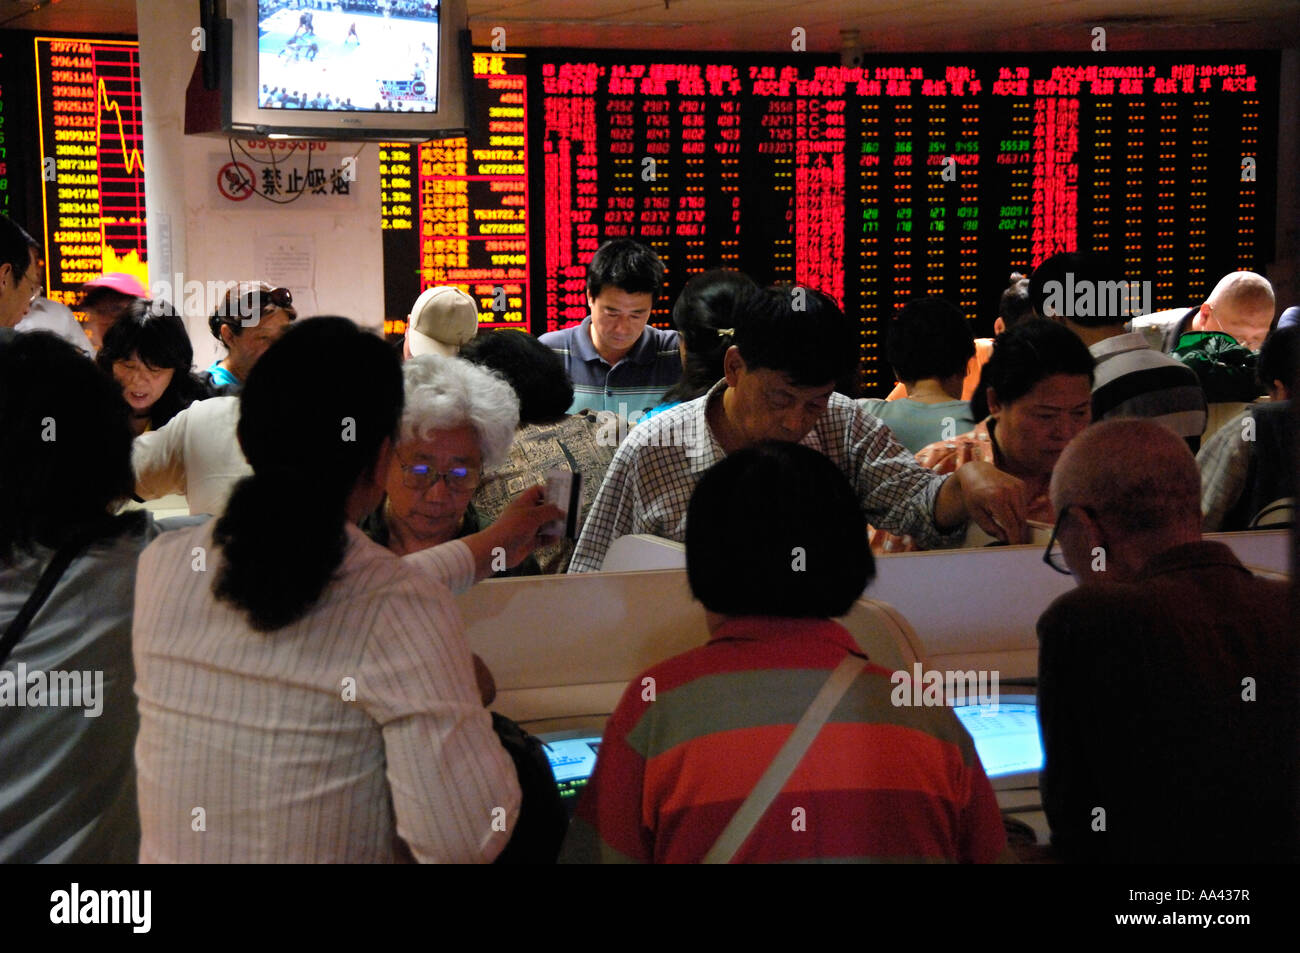 Les investisseurs chinois vérifier les prix des actions sur les moniteurs d'ordinateur dans une bourse à Beijing Chine 16 mai 2007 Banque D'Images